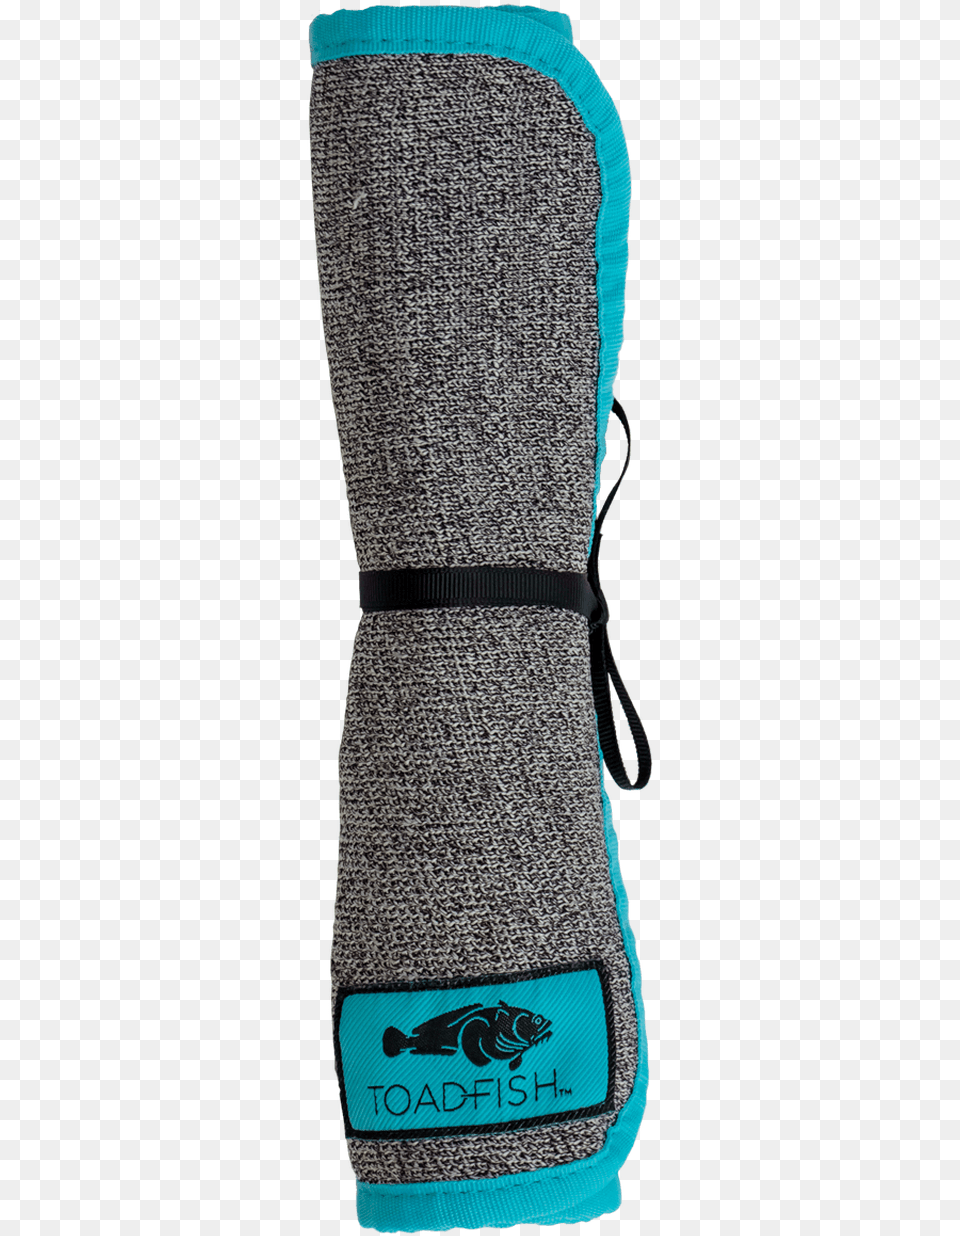 Sock, Clothing, Glove, Lifejacket, Vest Png Image